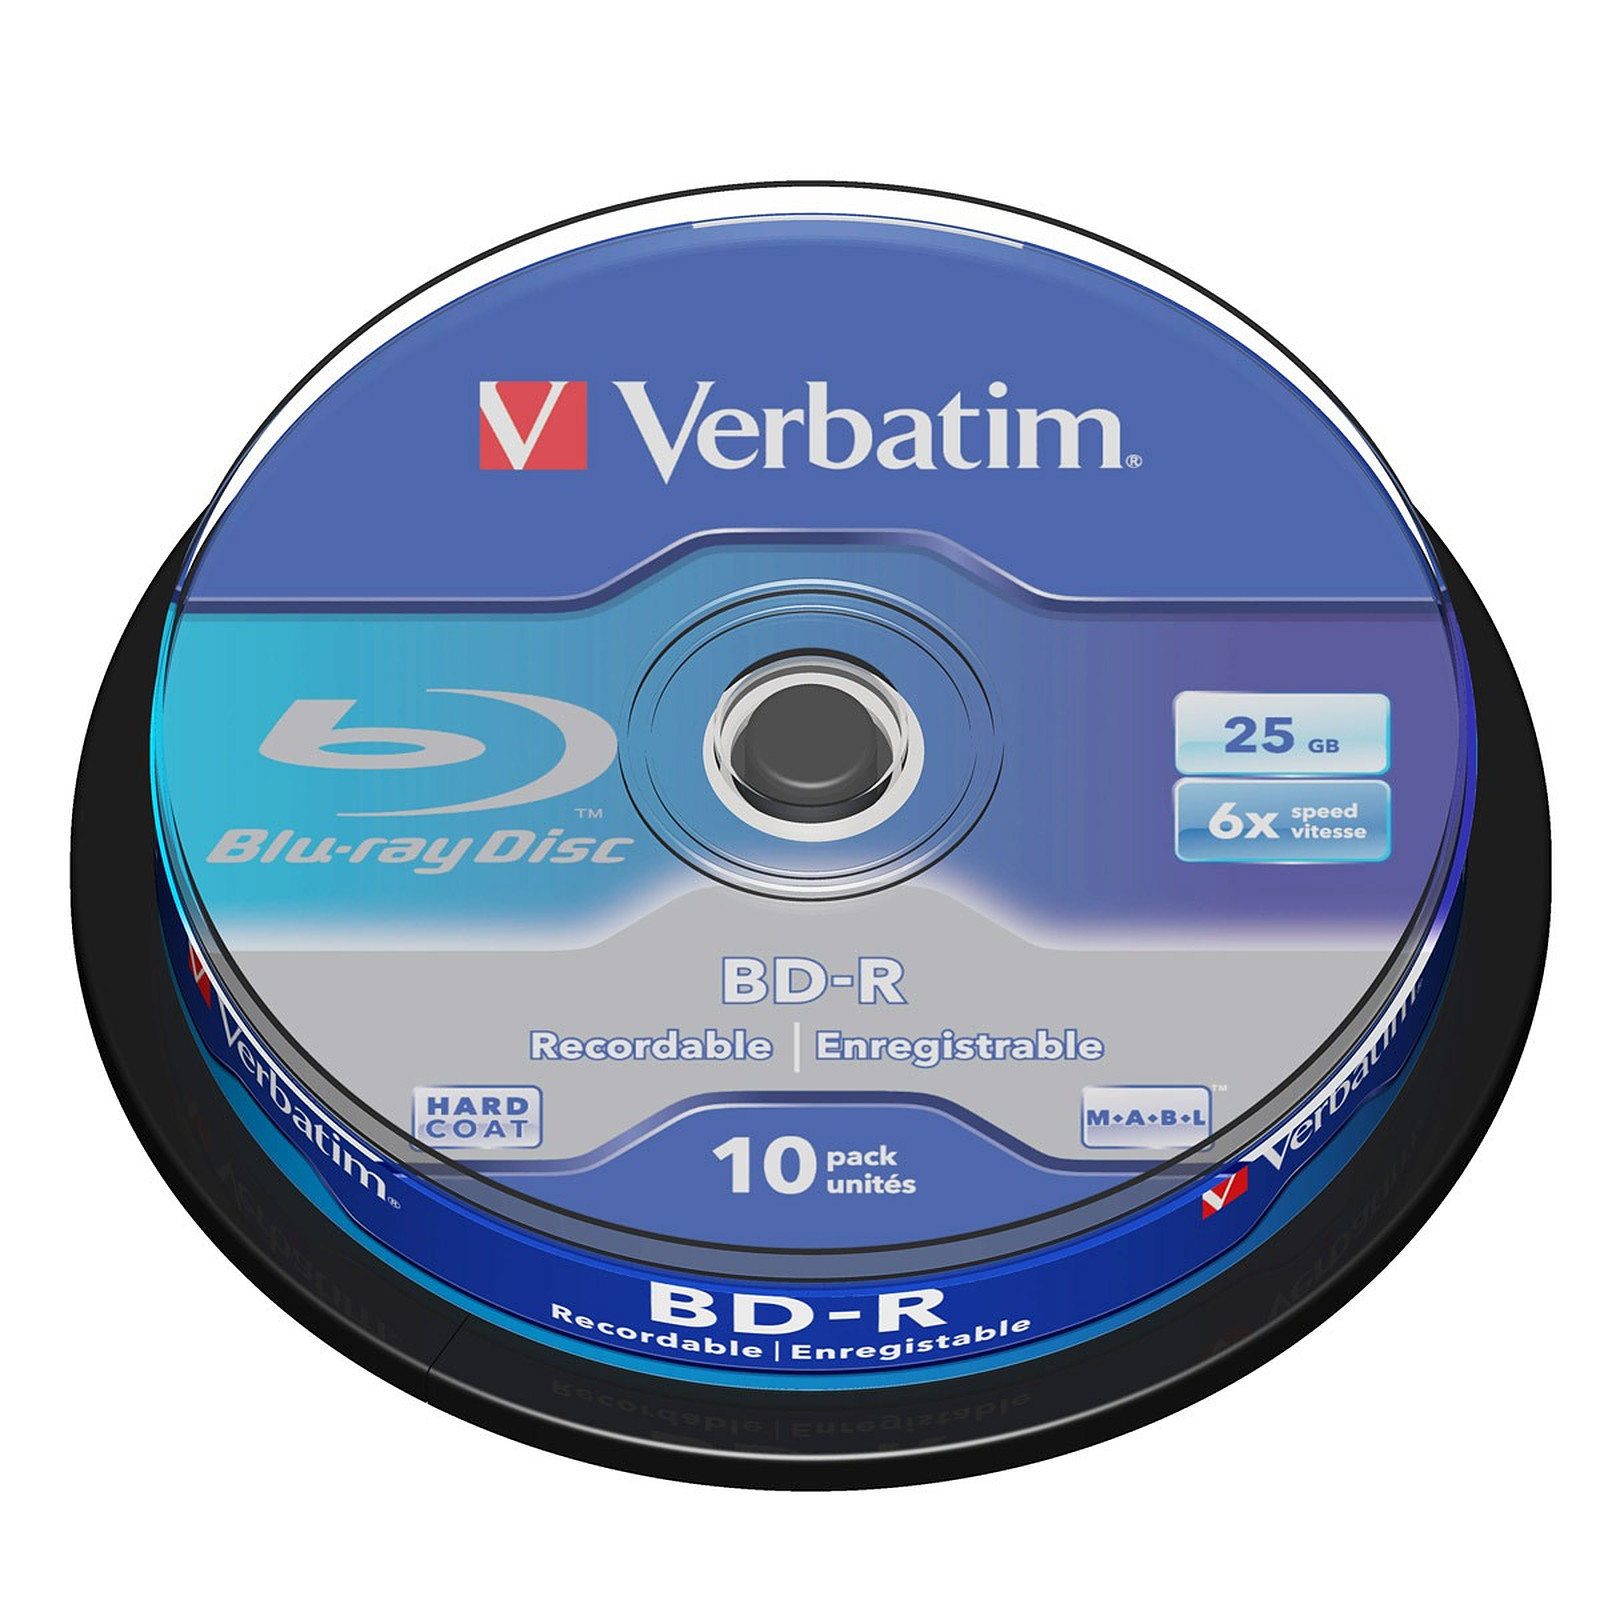 Verbatim BD-R 25 Go certifie 6x (par 10, spindle) - Blu-ray vierge Verbatim